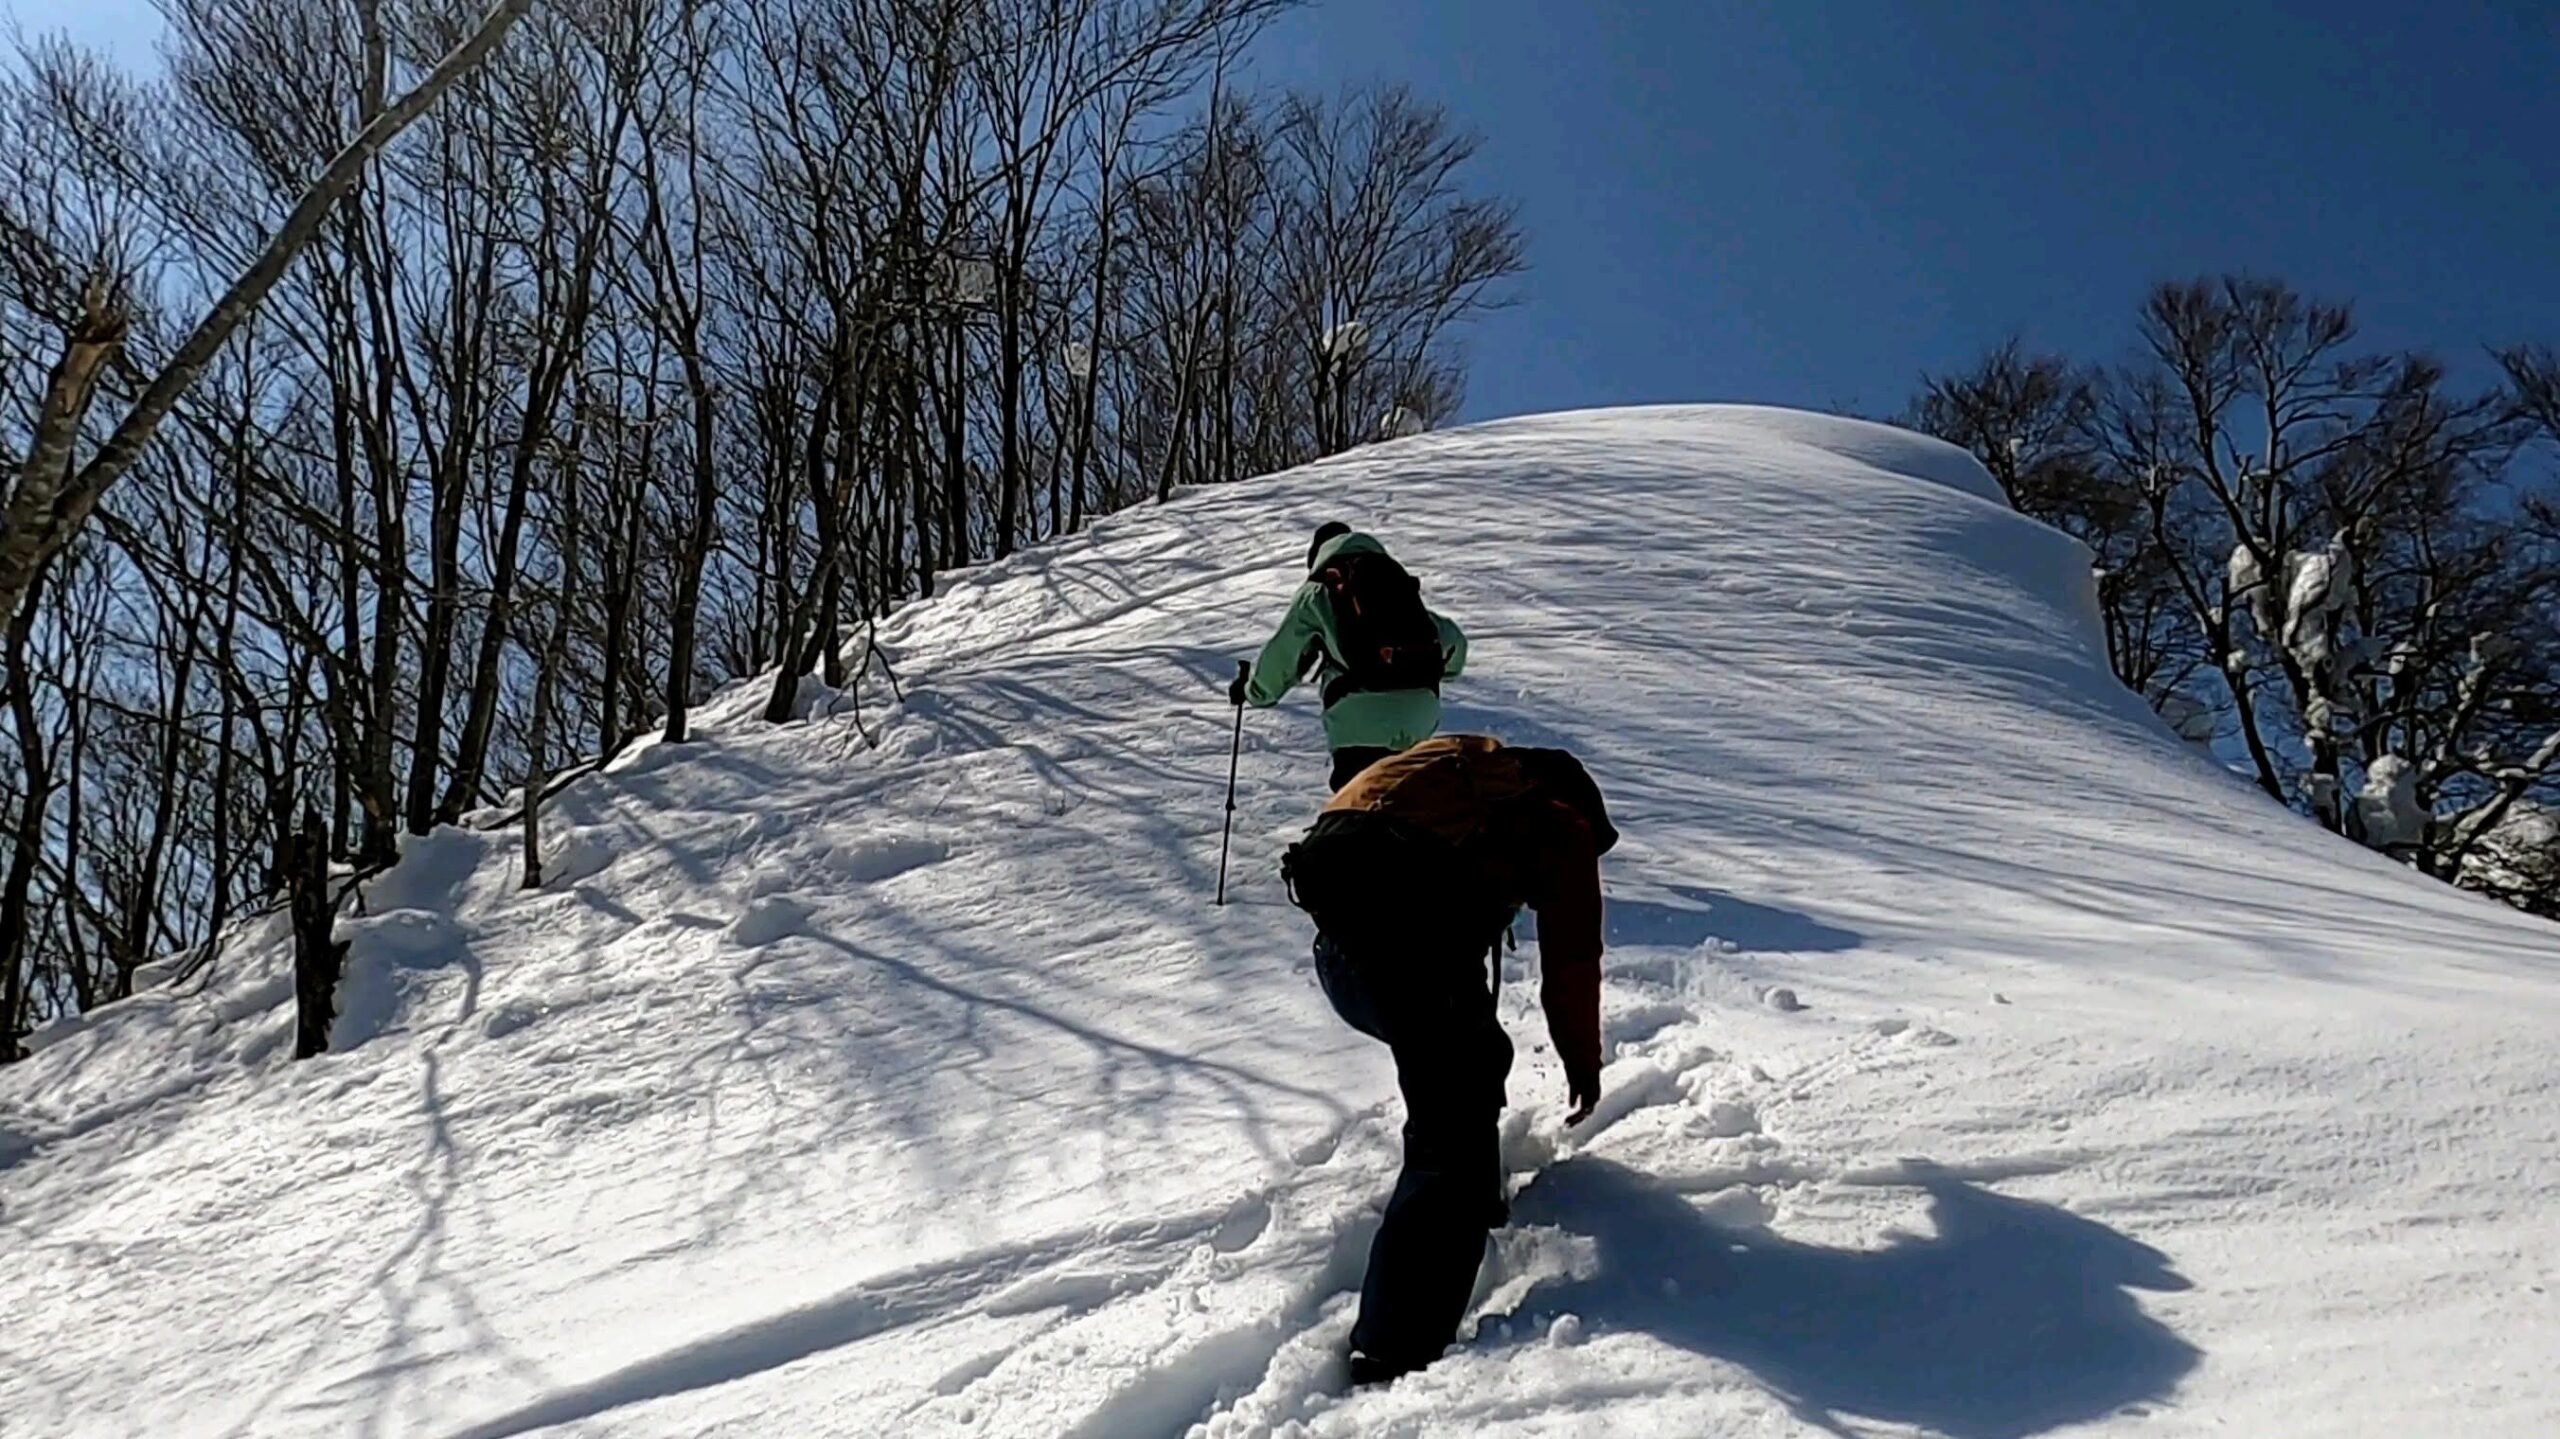 【ついにZAO雪緩む！3月雪山登山】瀧山から蔵王温泉スキー場全景 yamagatazao-ryuzan-trekking-march.jpg